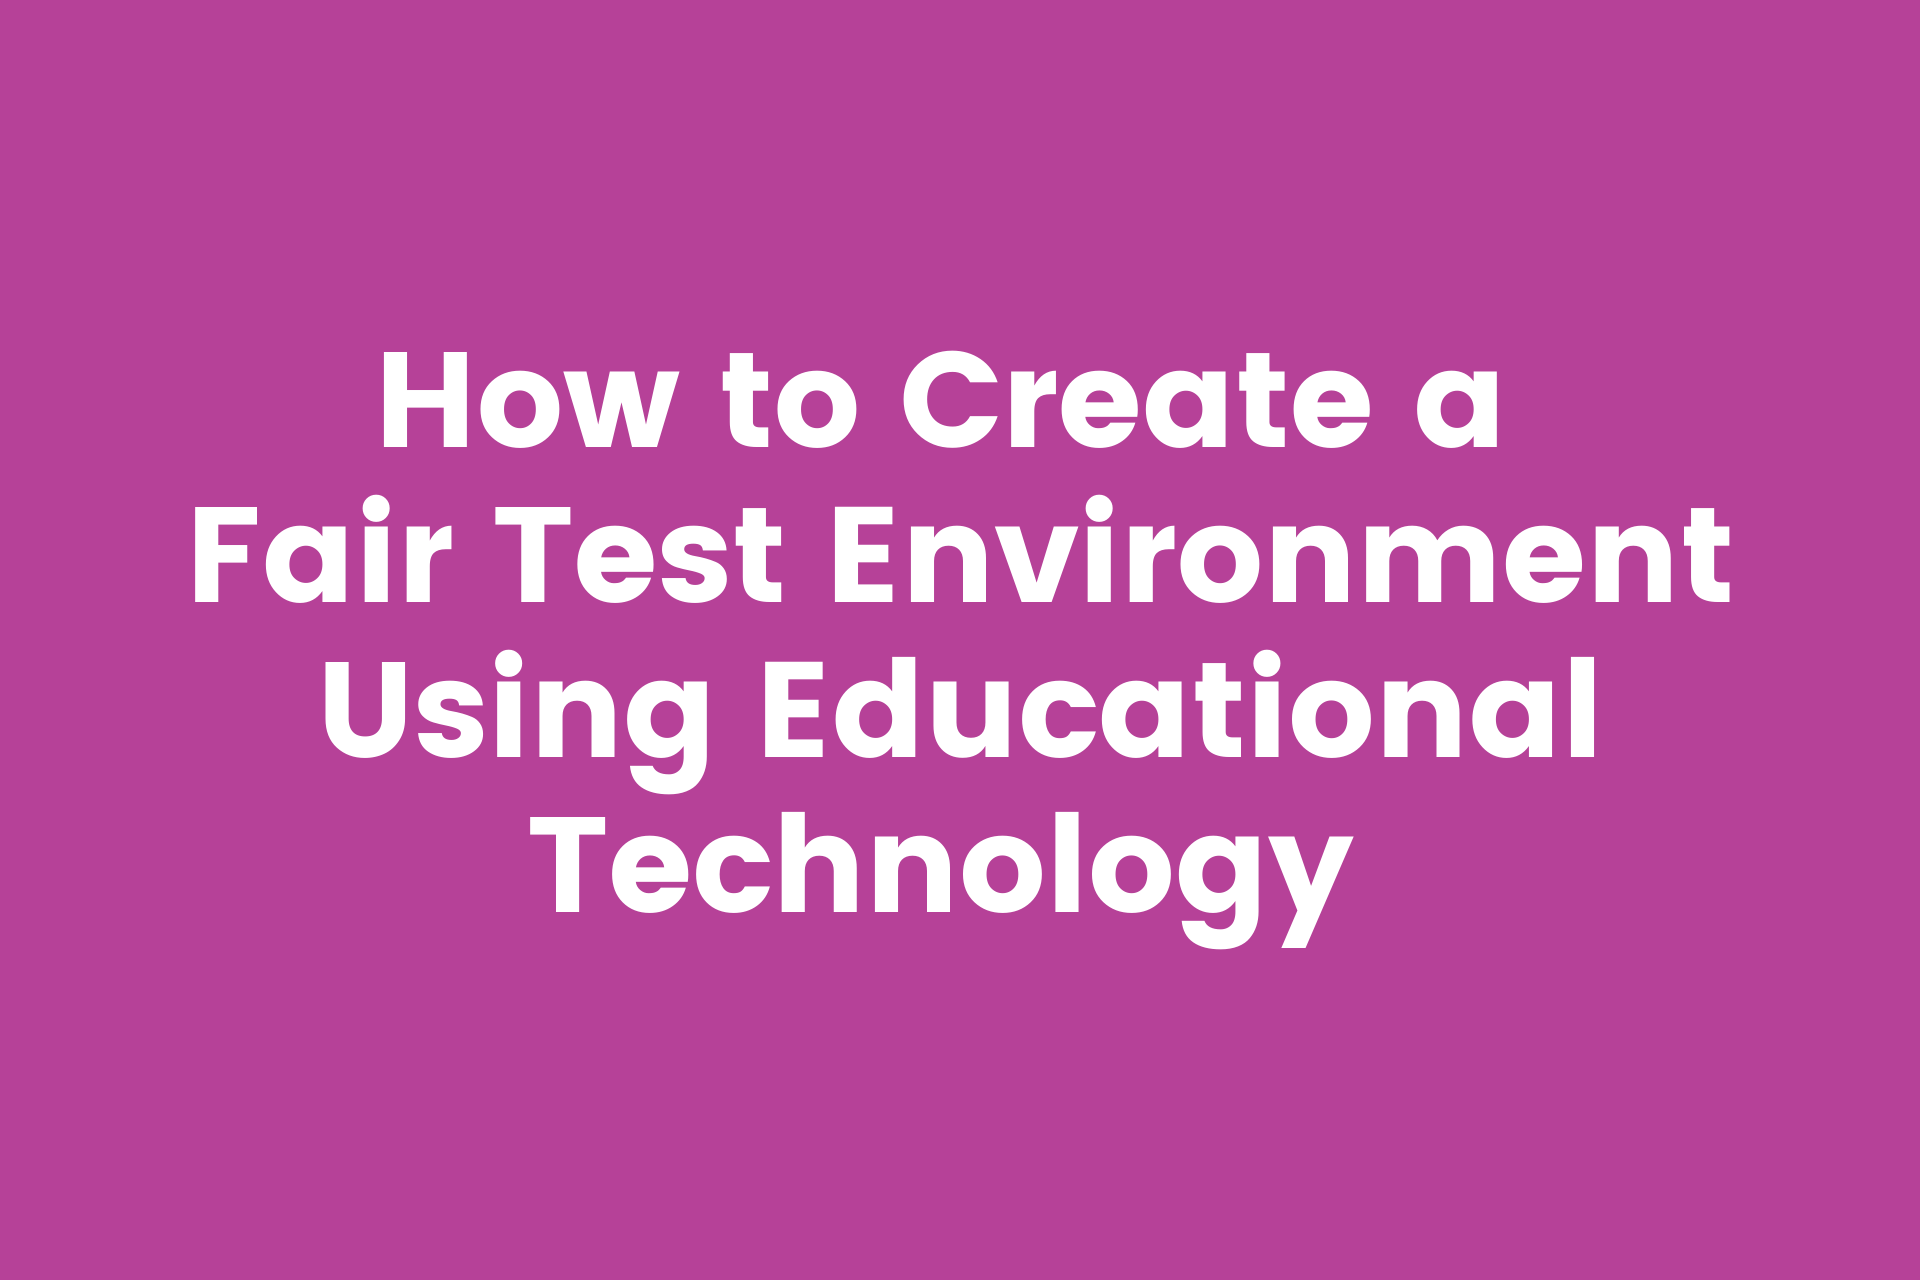 4 example scenarios when using ed tech can help create a fair test environment